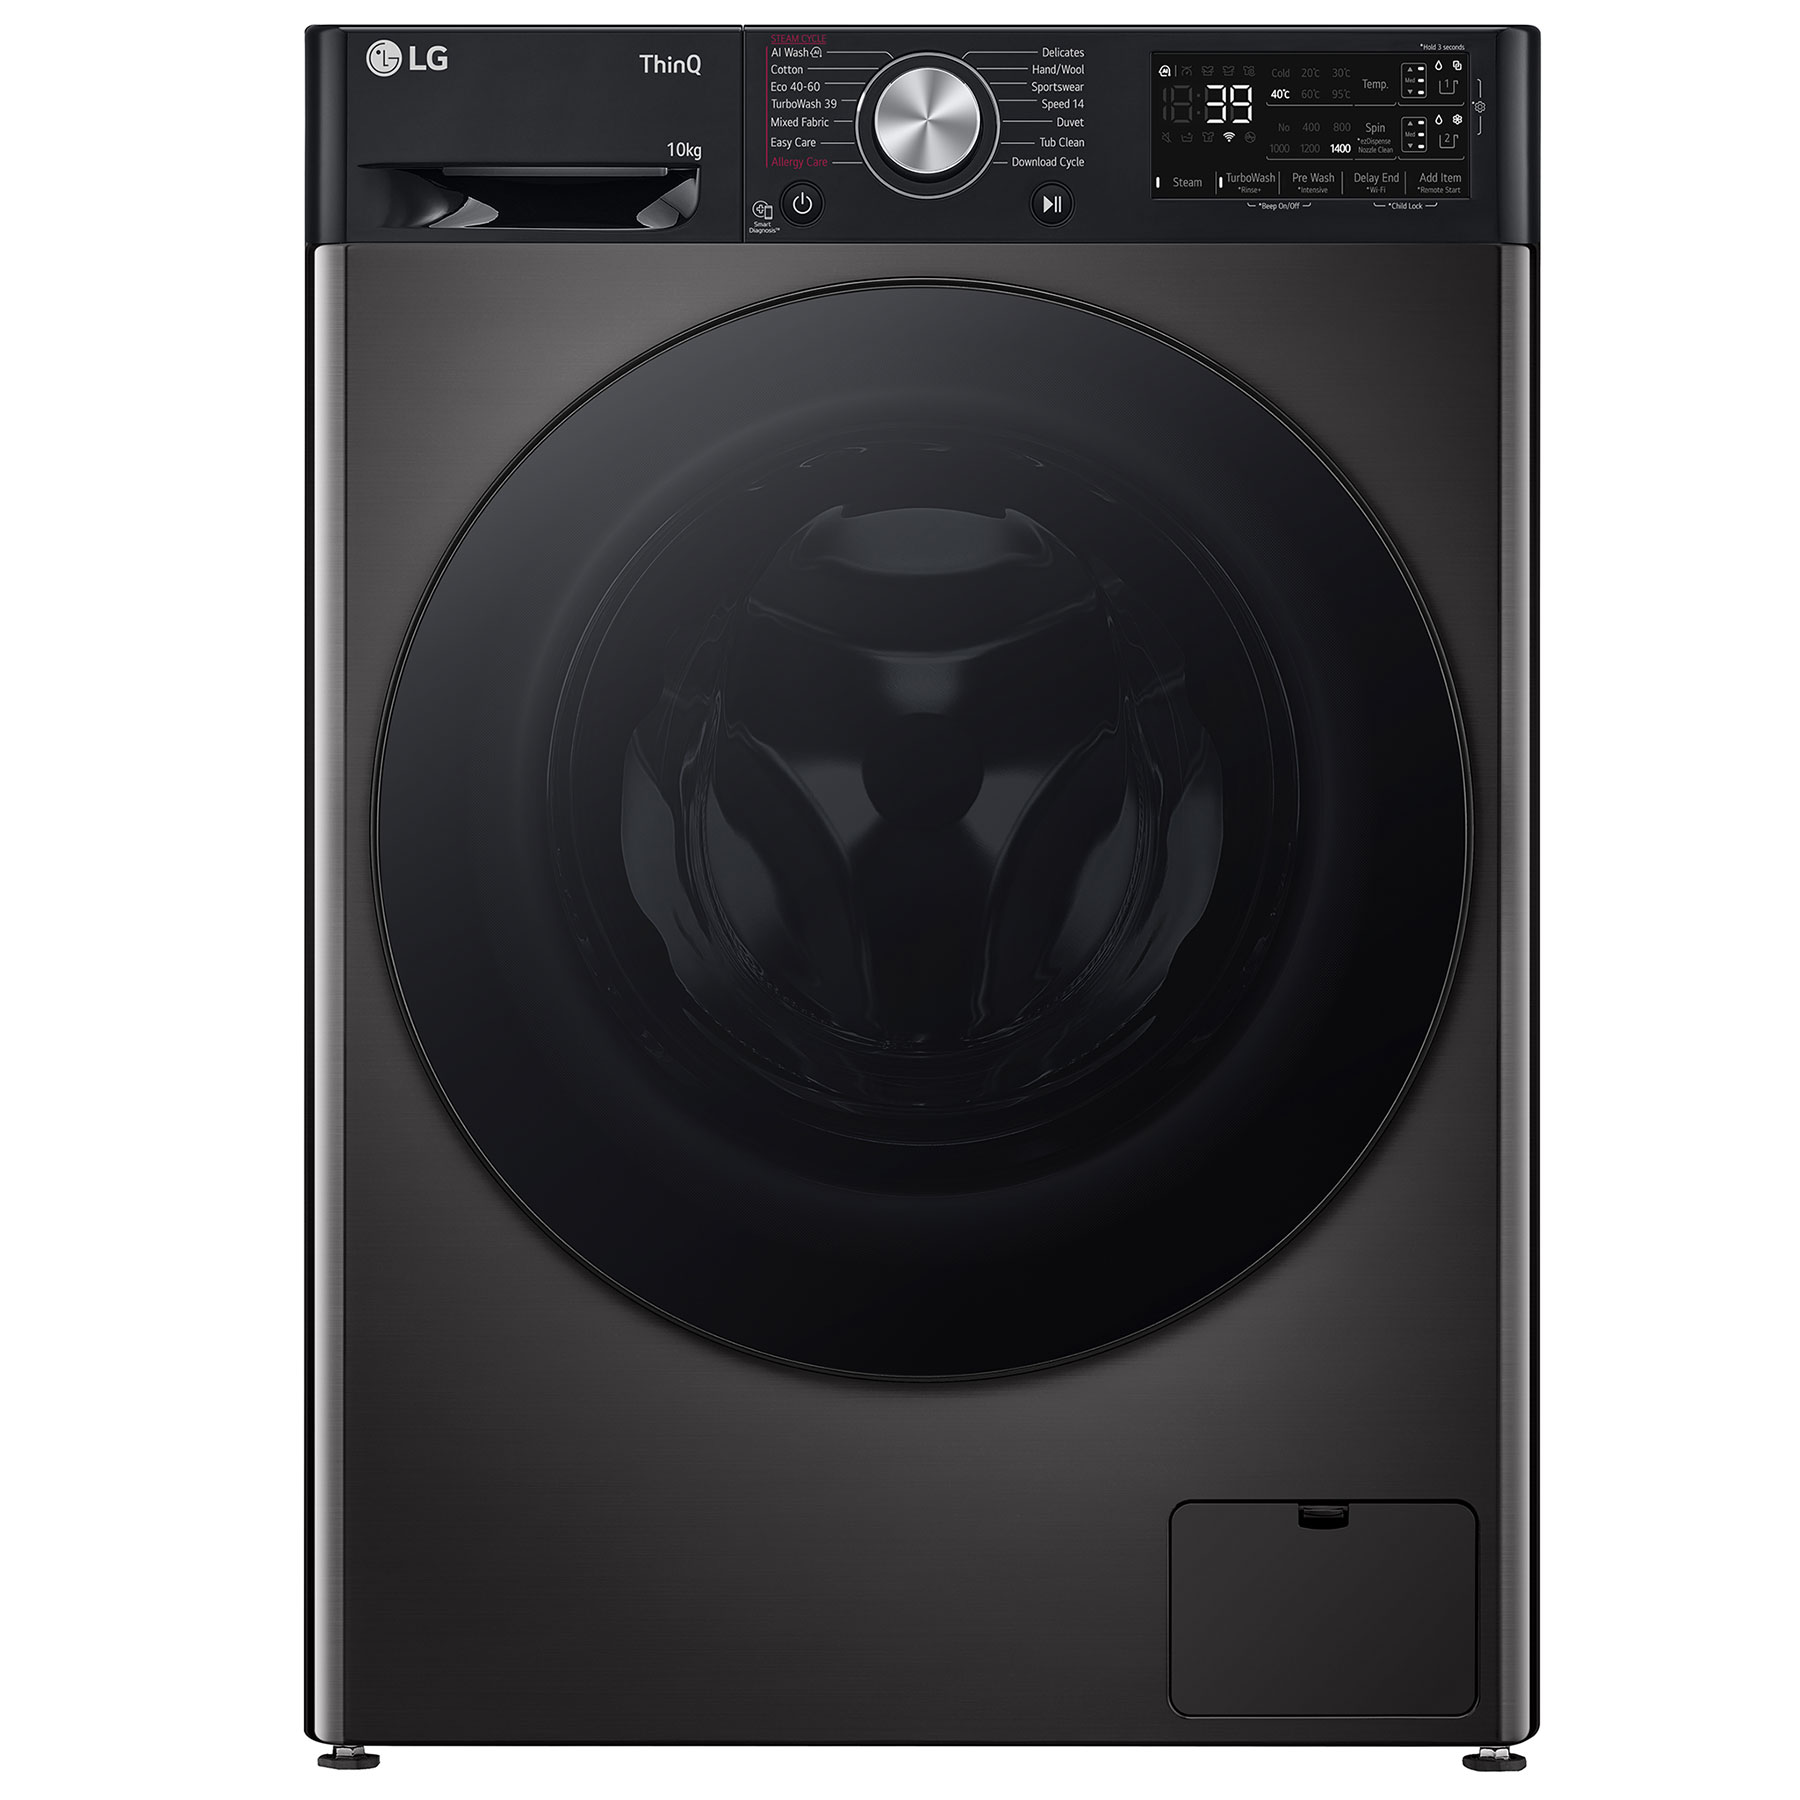 LG F4Y710BBTA1 Washing Machine in Black 1400rpm 10kg A Rated Wi Fi